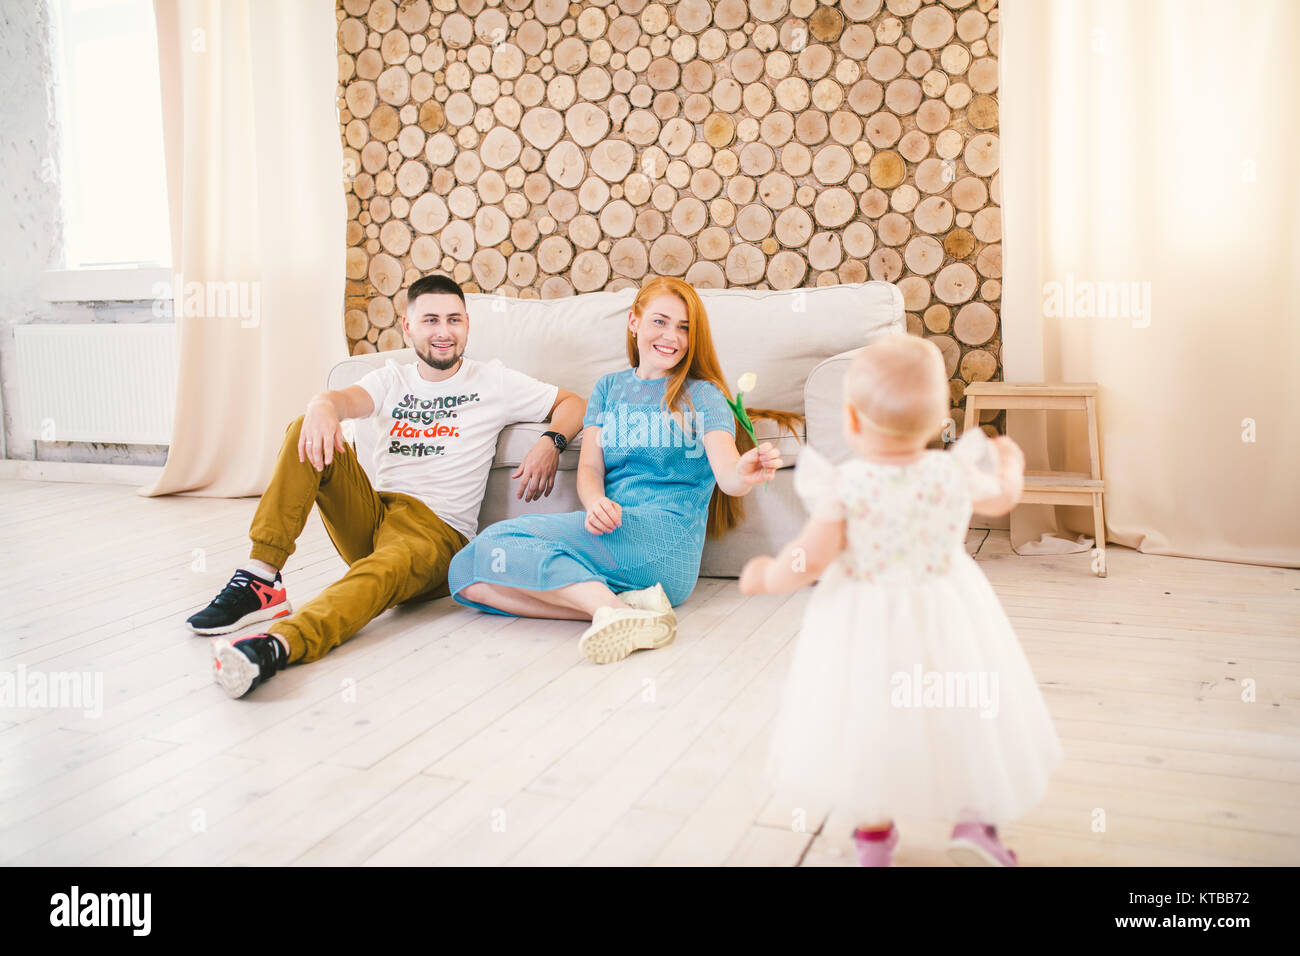 Junge Familie sitzt auf dem Boden in der Nähe der Couch, kleine Tochter einer Blondine ein Jahr alt ist, lernen in einem weißen Kleid vor dem Hintergrund von h zu Fuß Stockfoto